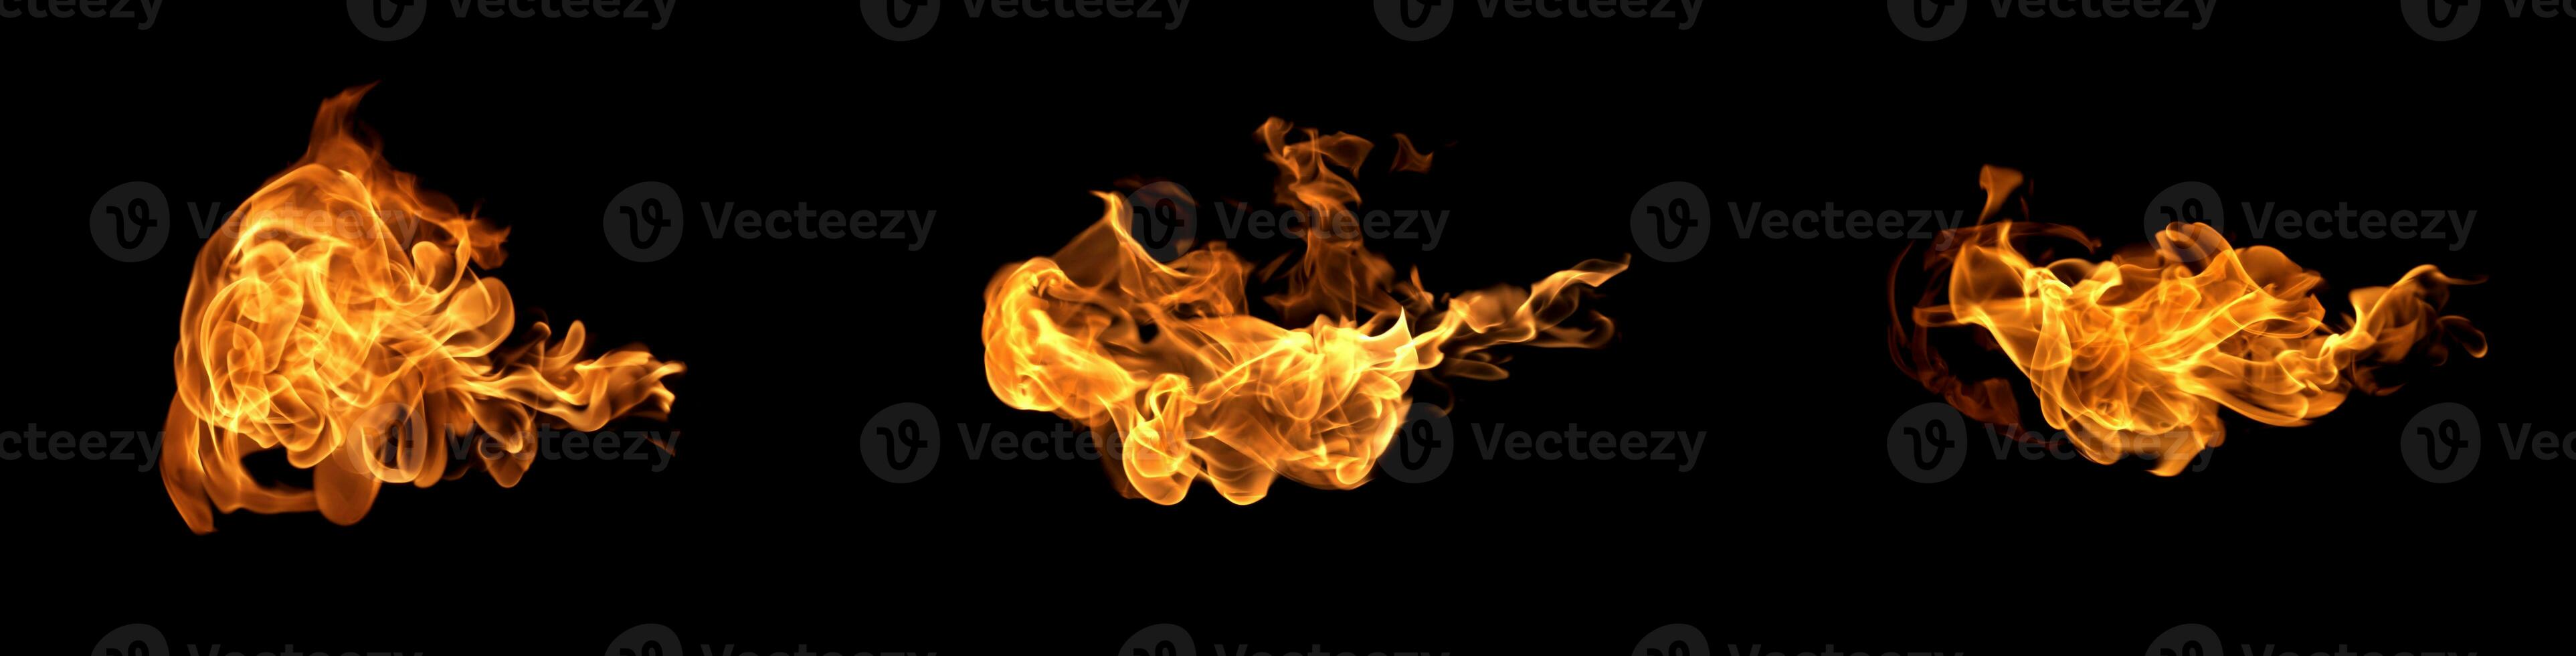 Feuerflammen auf einem schwarzen Hintergrund foto